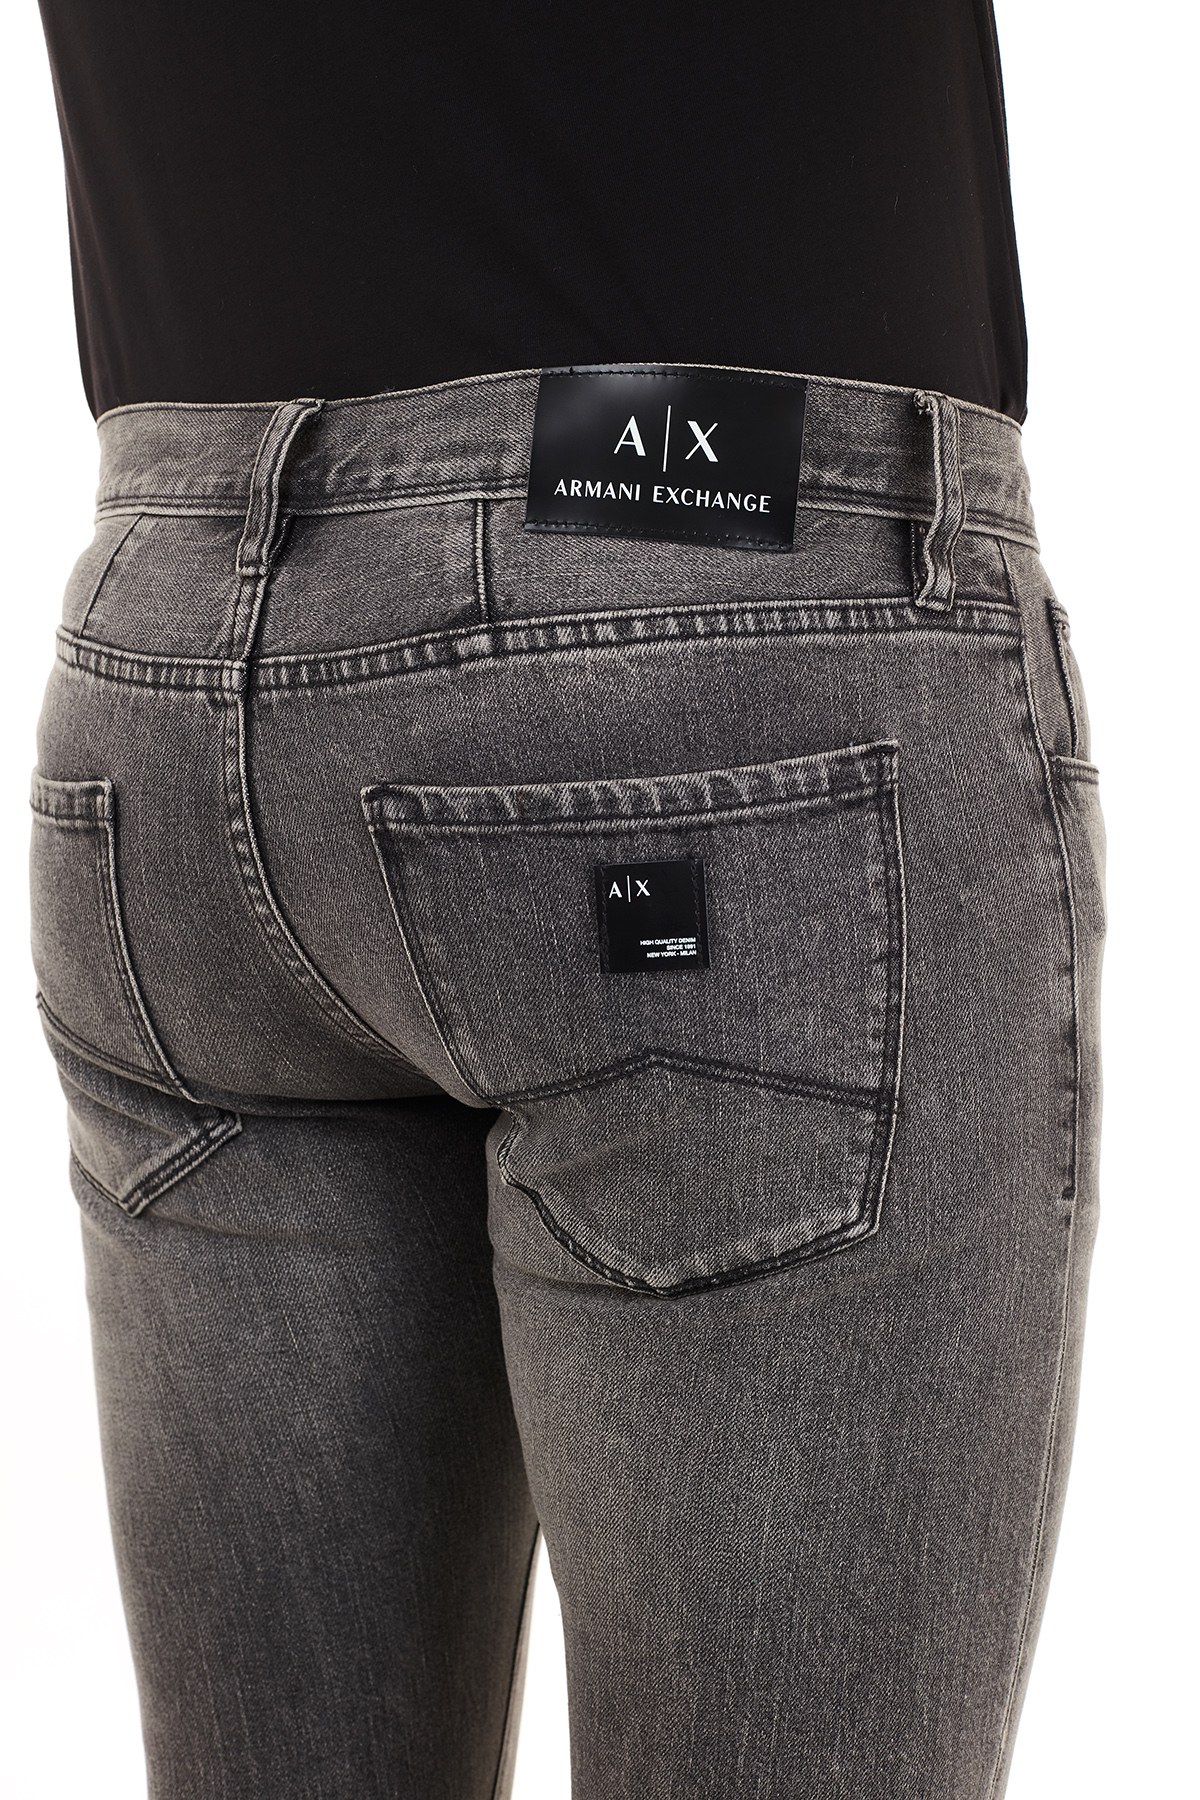 Armani Exchange J13 Jeans Erkek Kot Pantolon 6HZJ13 Z1KQZ 0903 GRİ